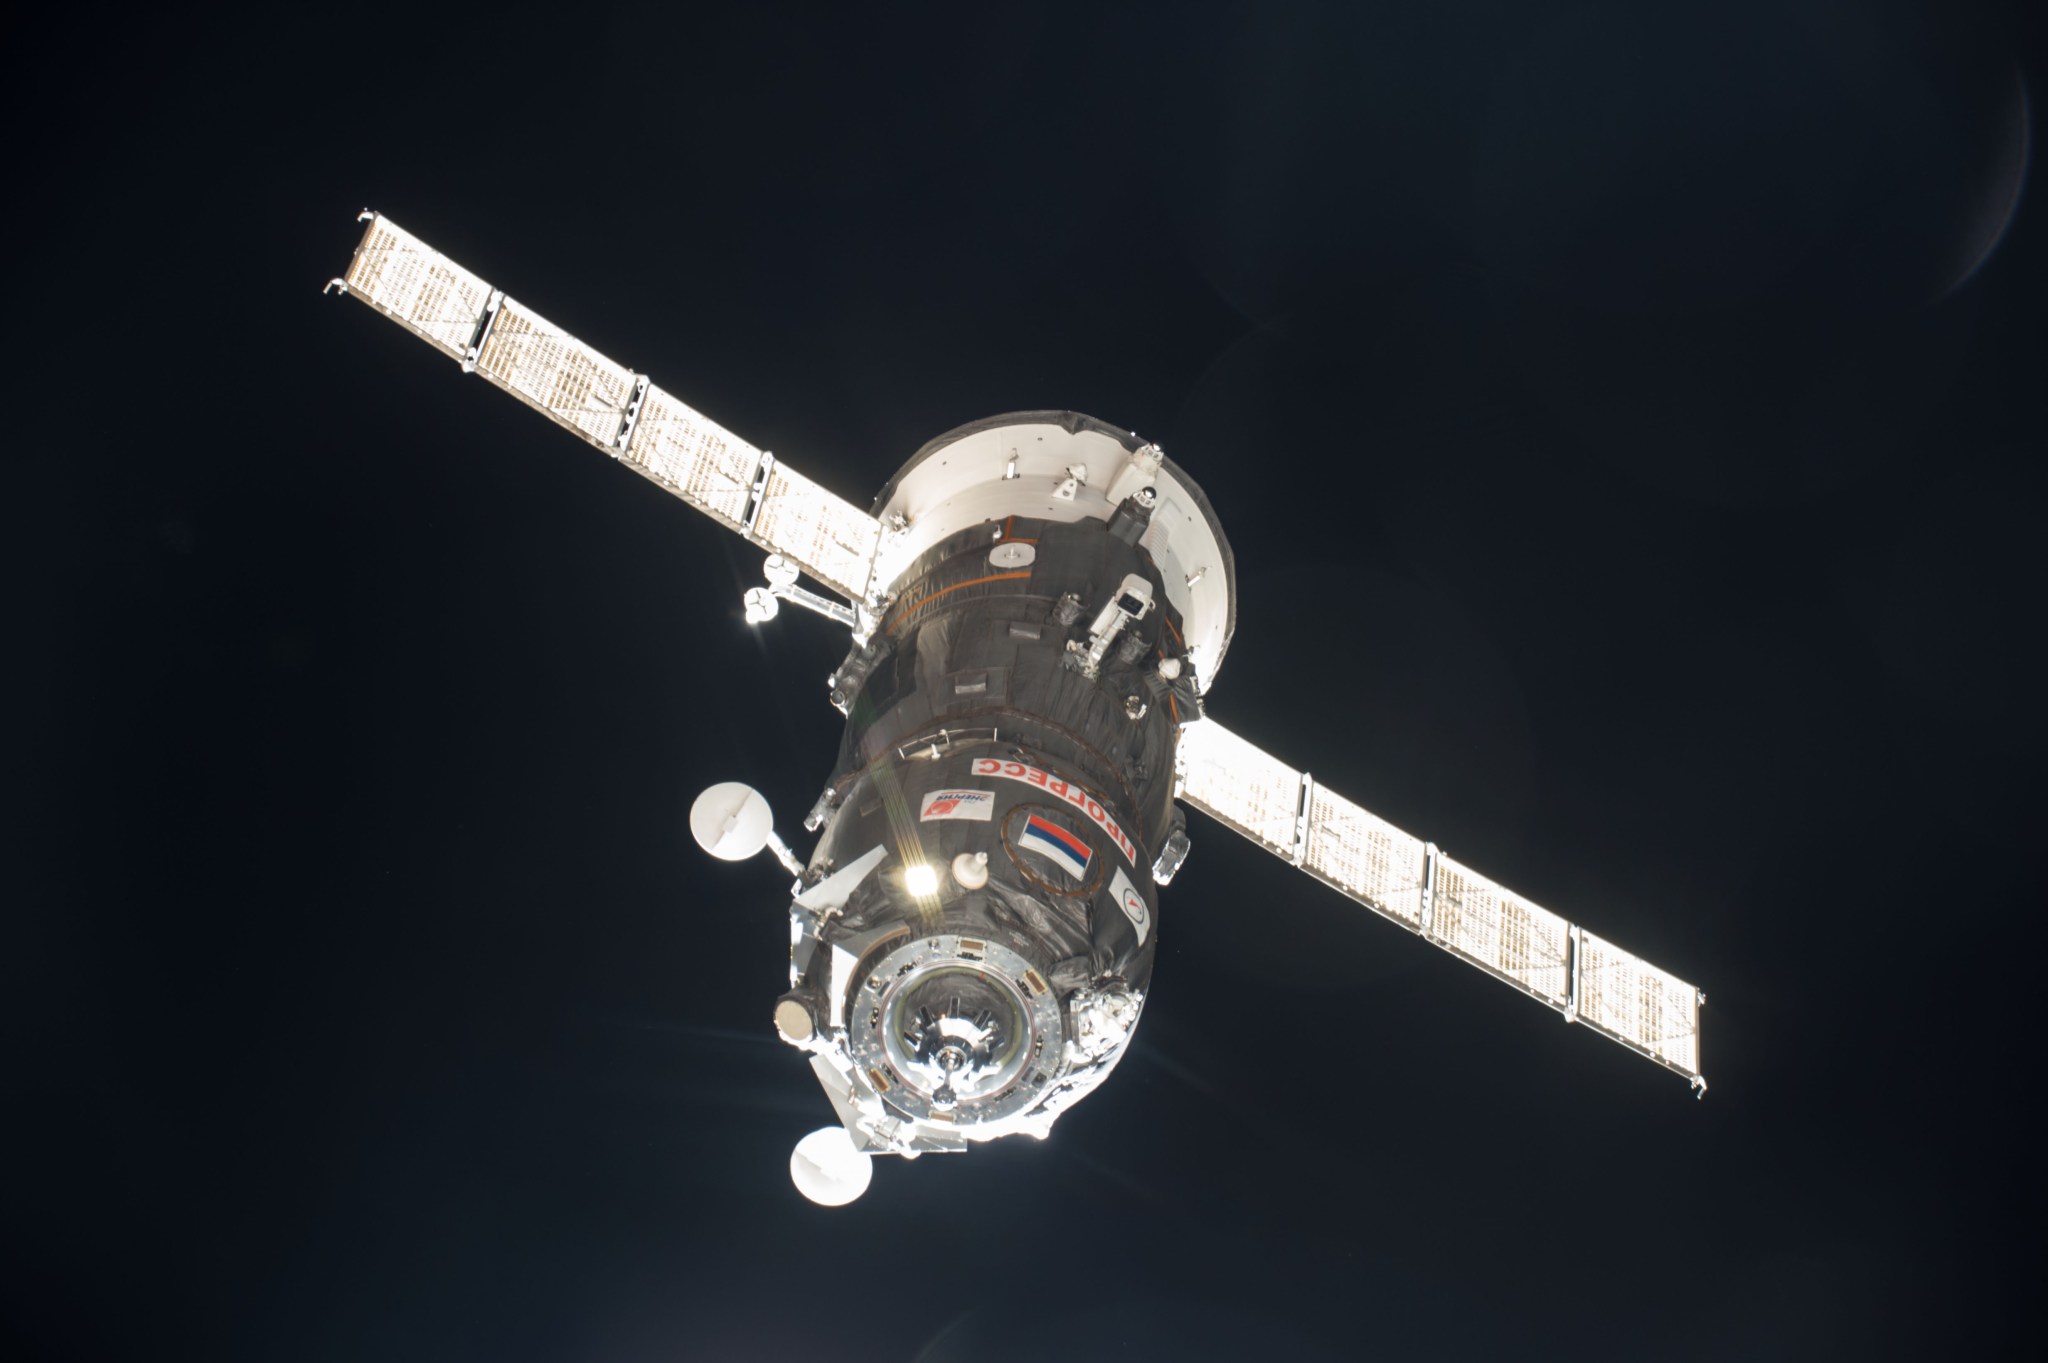 Russian cargo spacecraft Progress